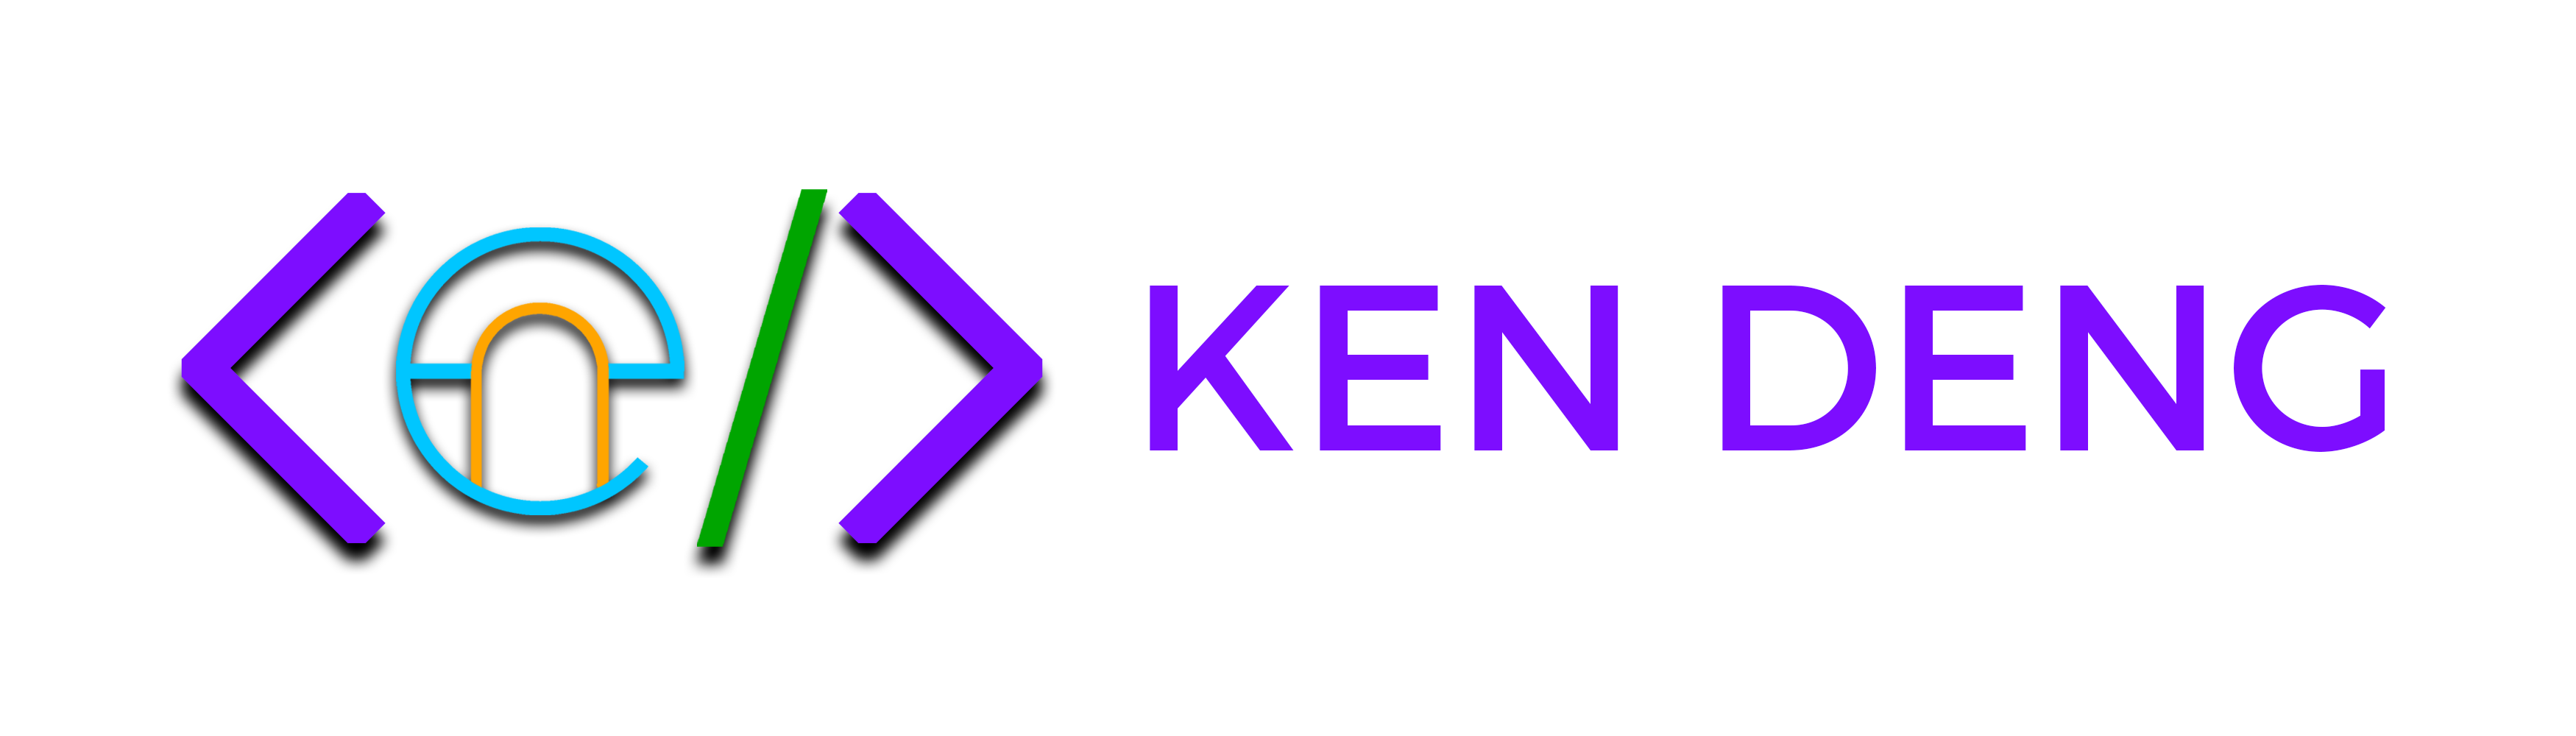 Ken Deng Logo 2019 Full White Background